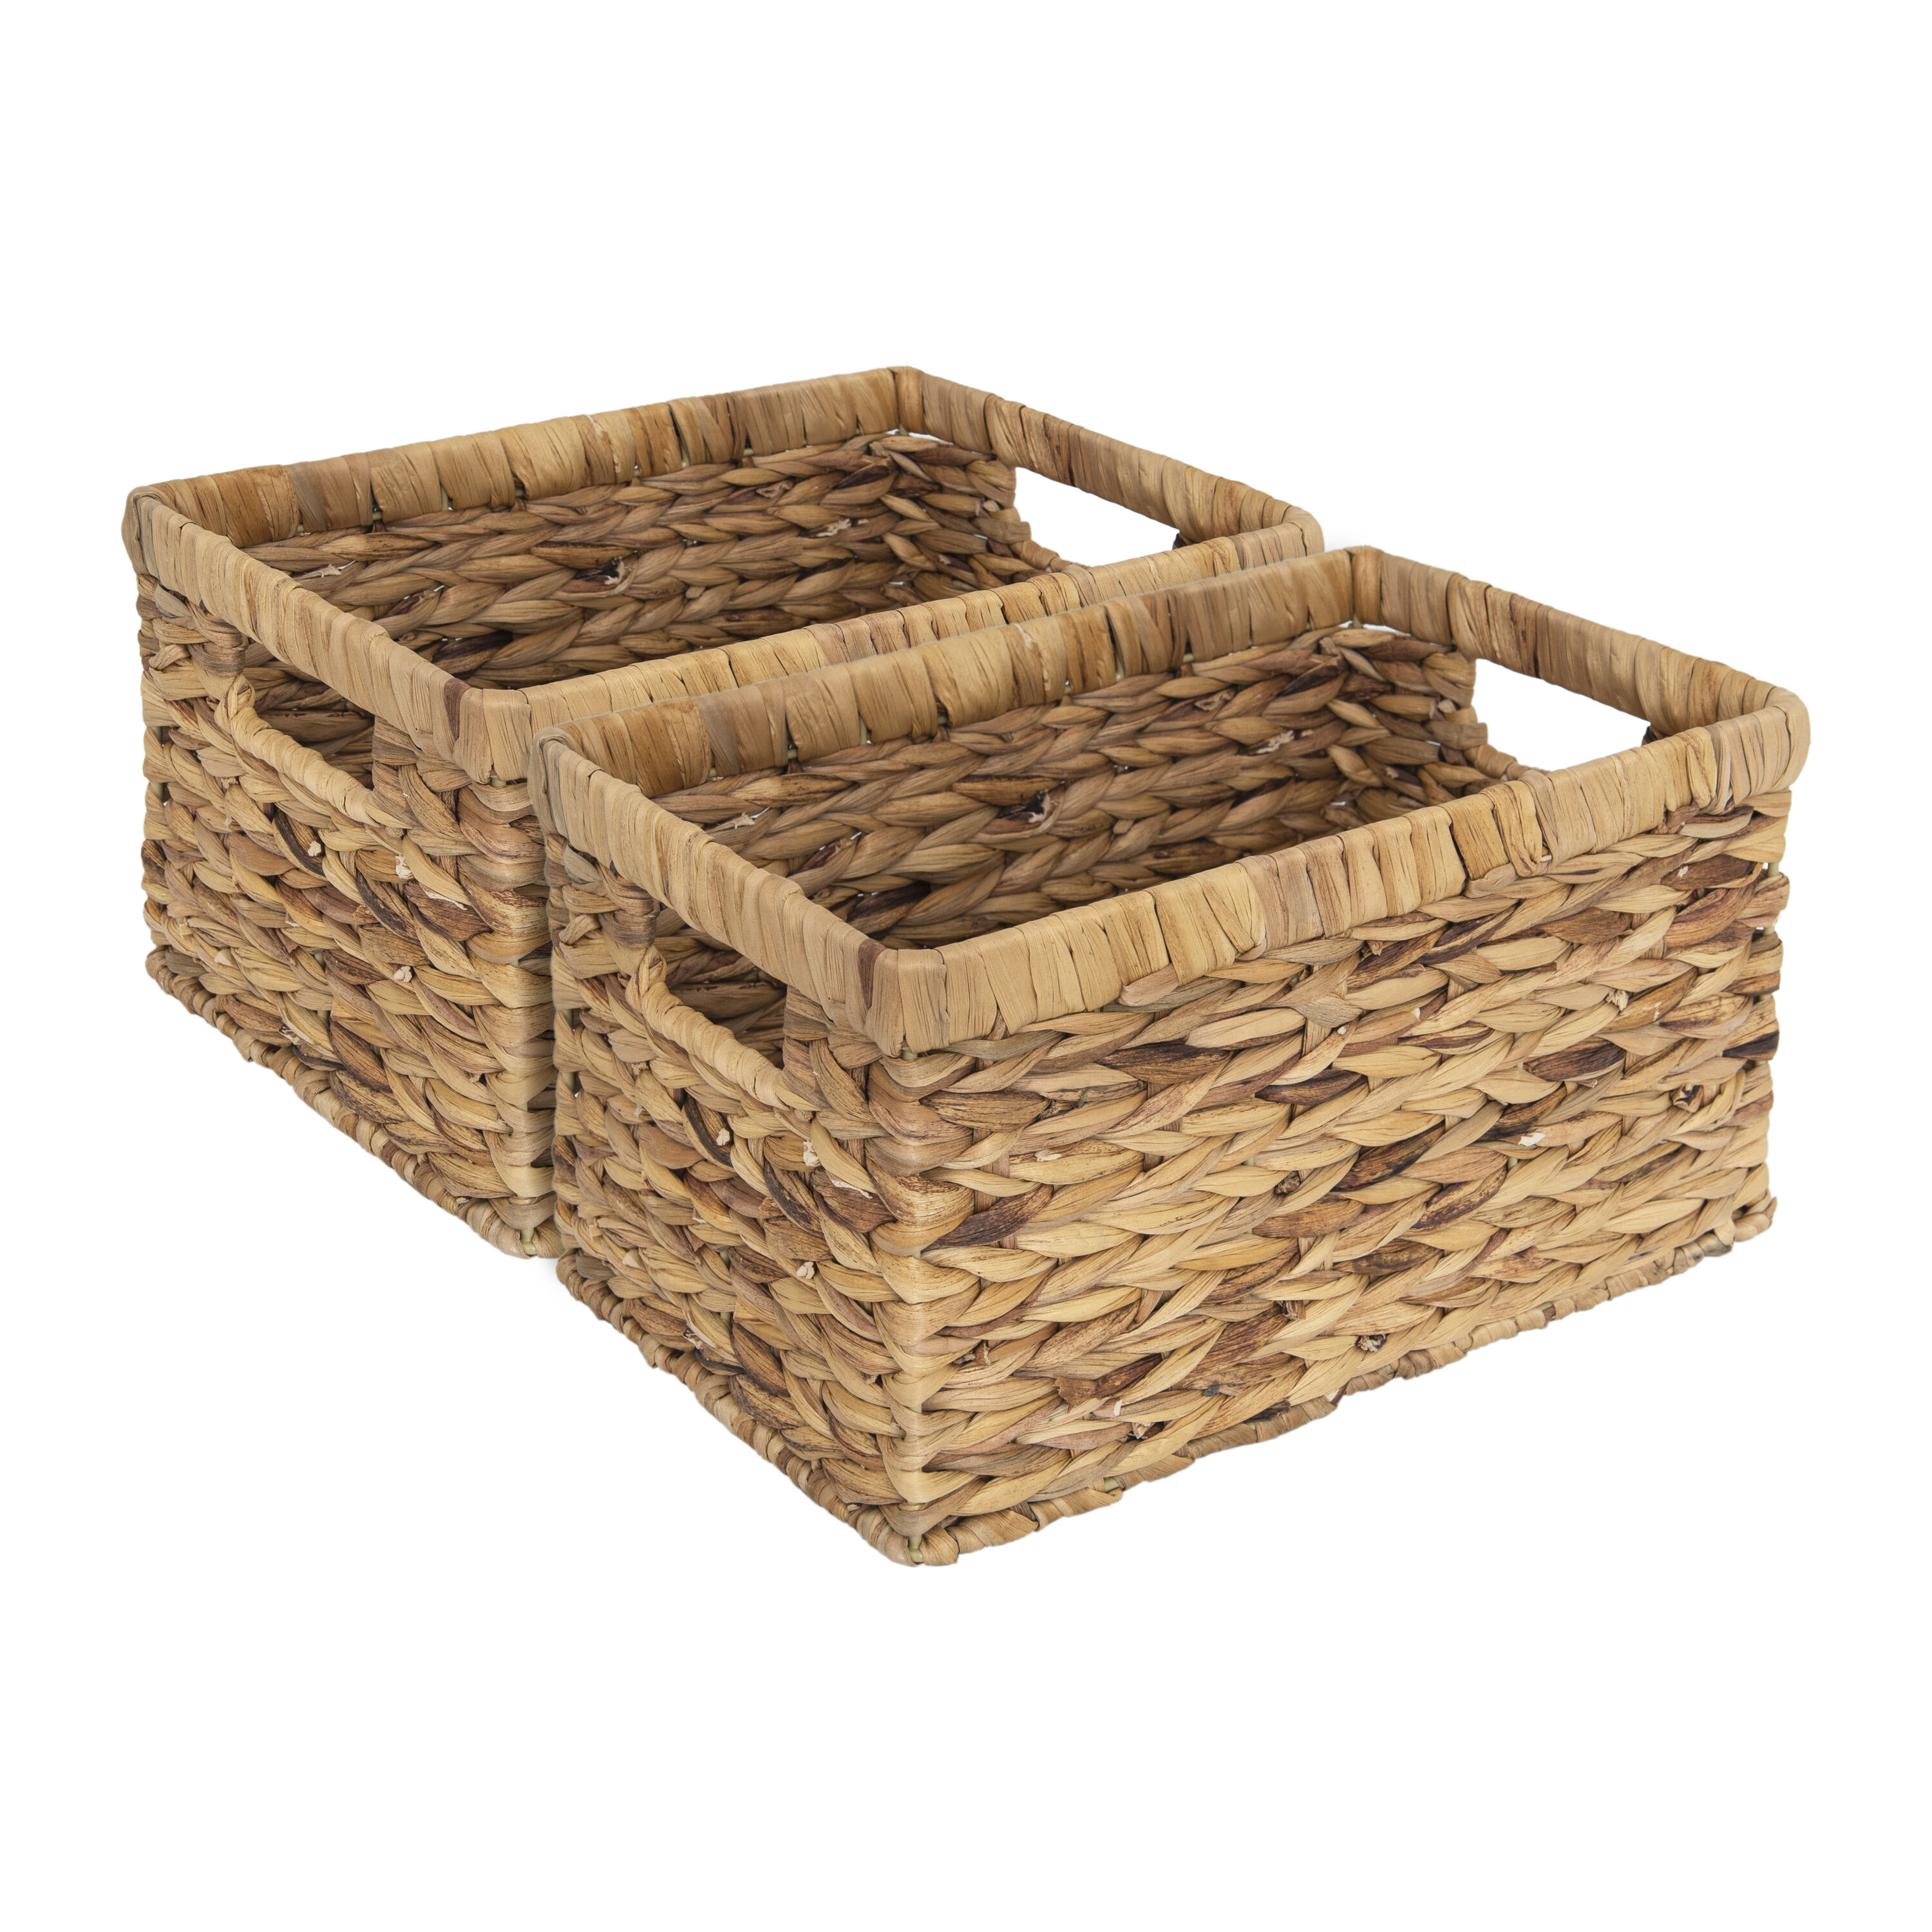 Buy Wholesale China Sturdy Fabric Cube Storage Basket Decorative